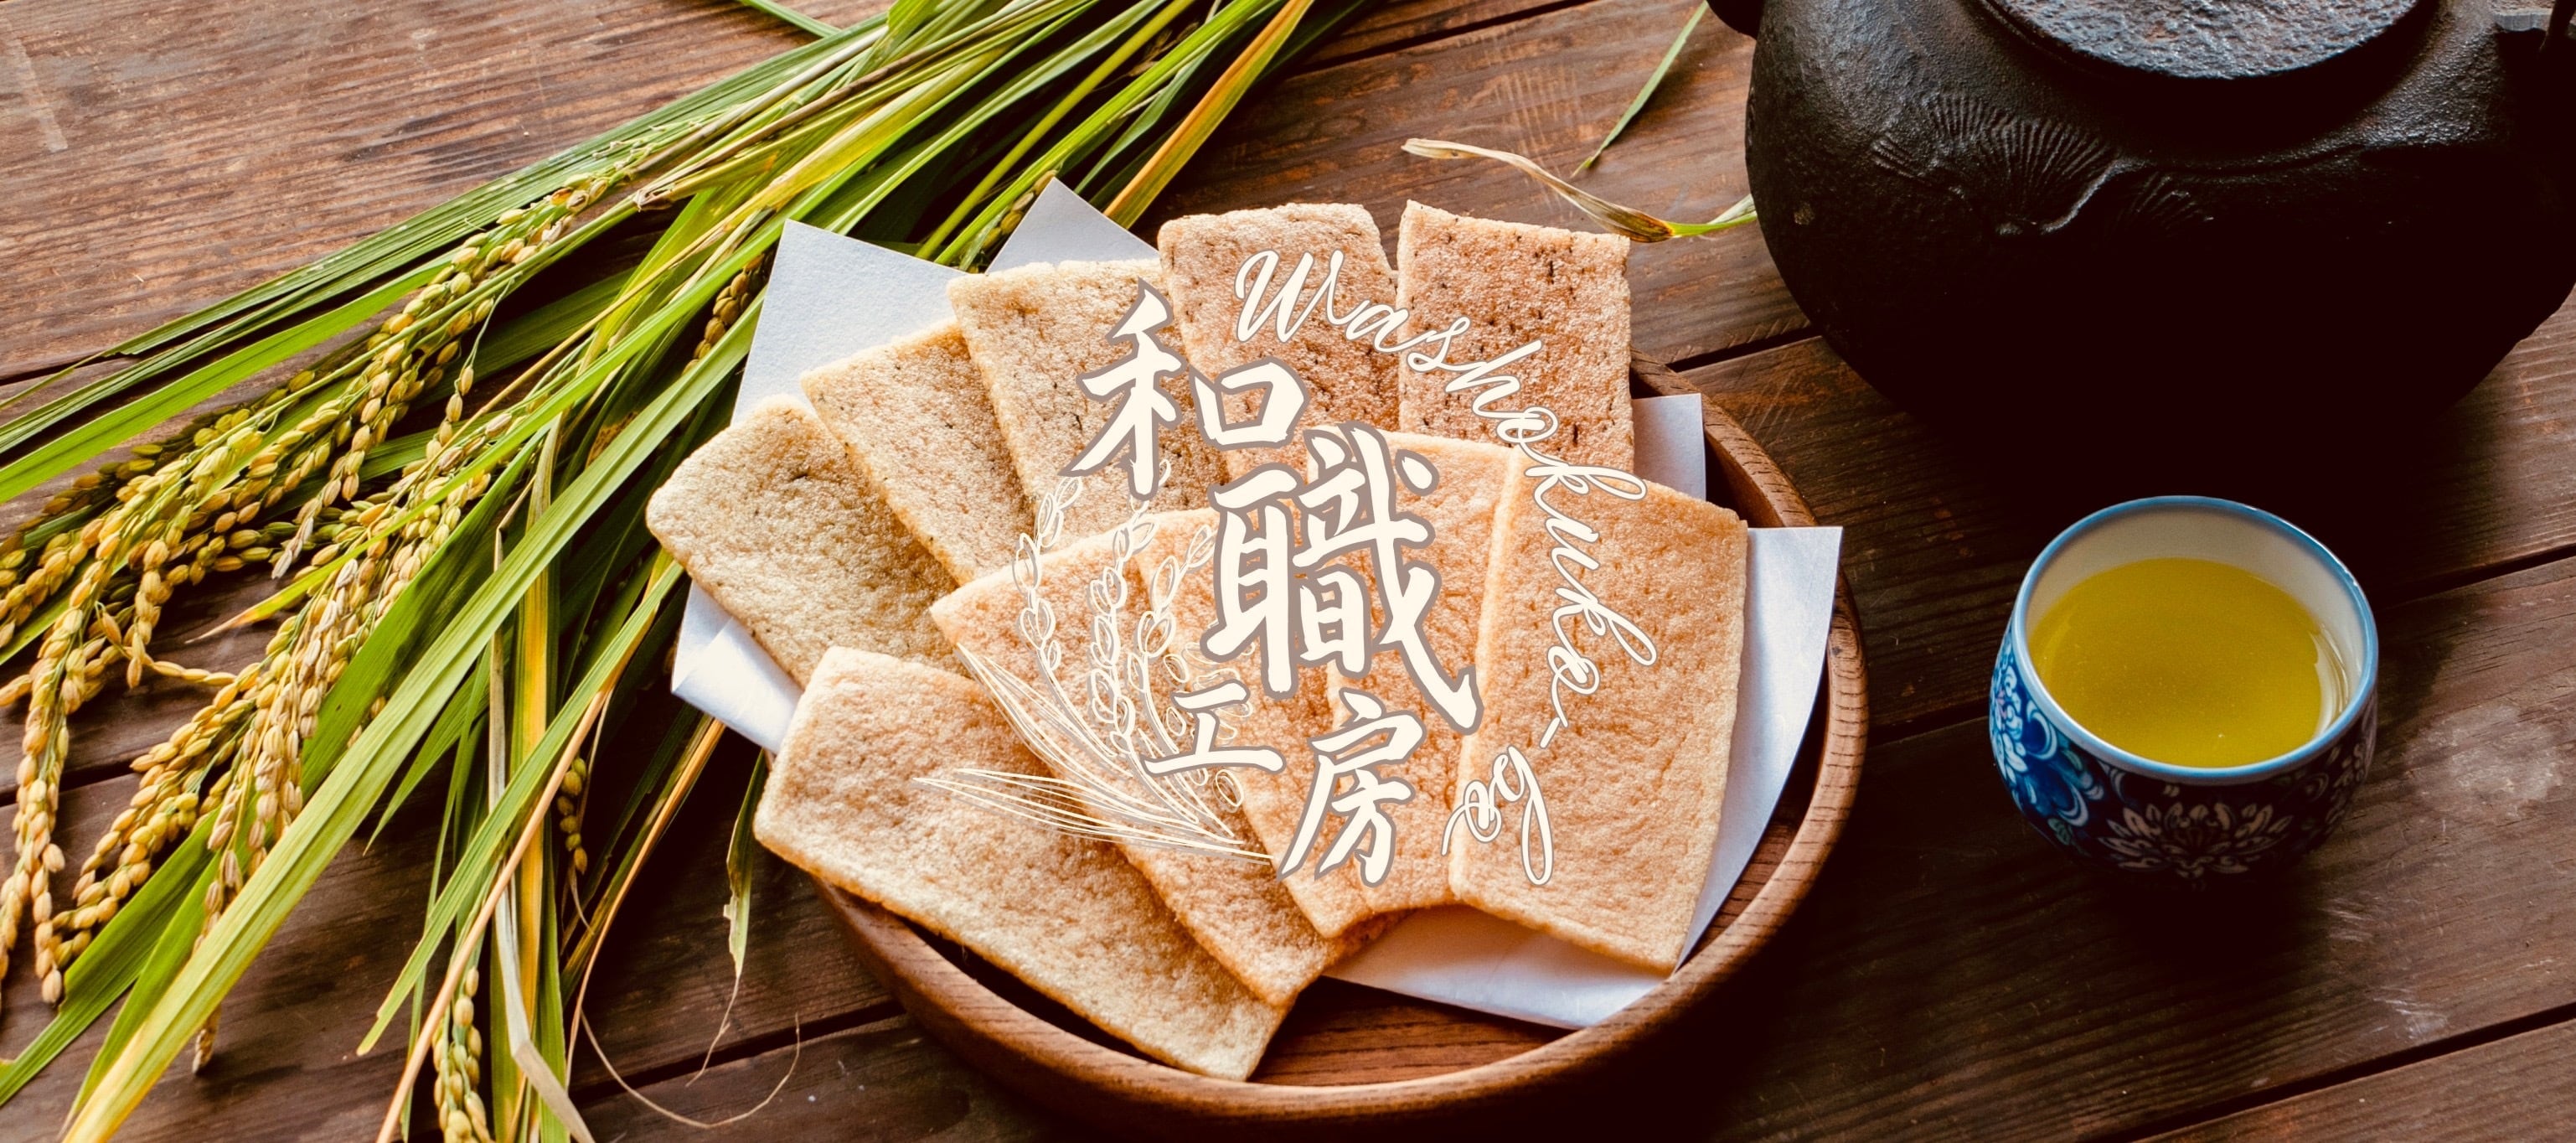 島根県の柿木村で自給自足をしながら、お菓子は揚げかき餅を専門に 自然を生かしたものづくりをしています。 昔の人の知恵や田舎の恵みを感じていただける商品をお届けします。